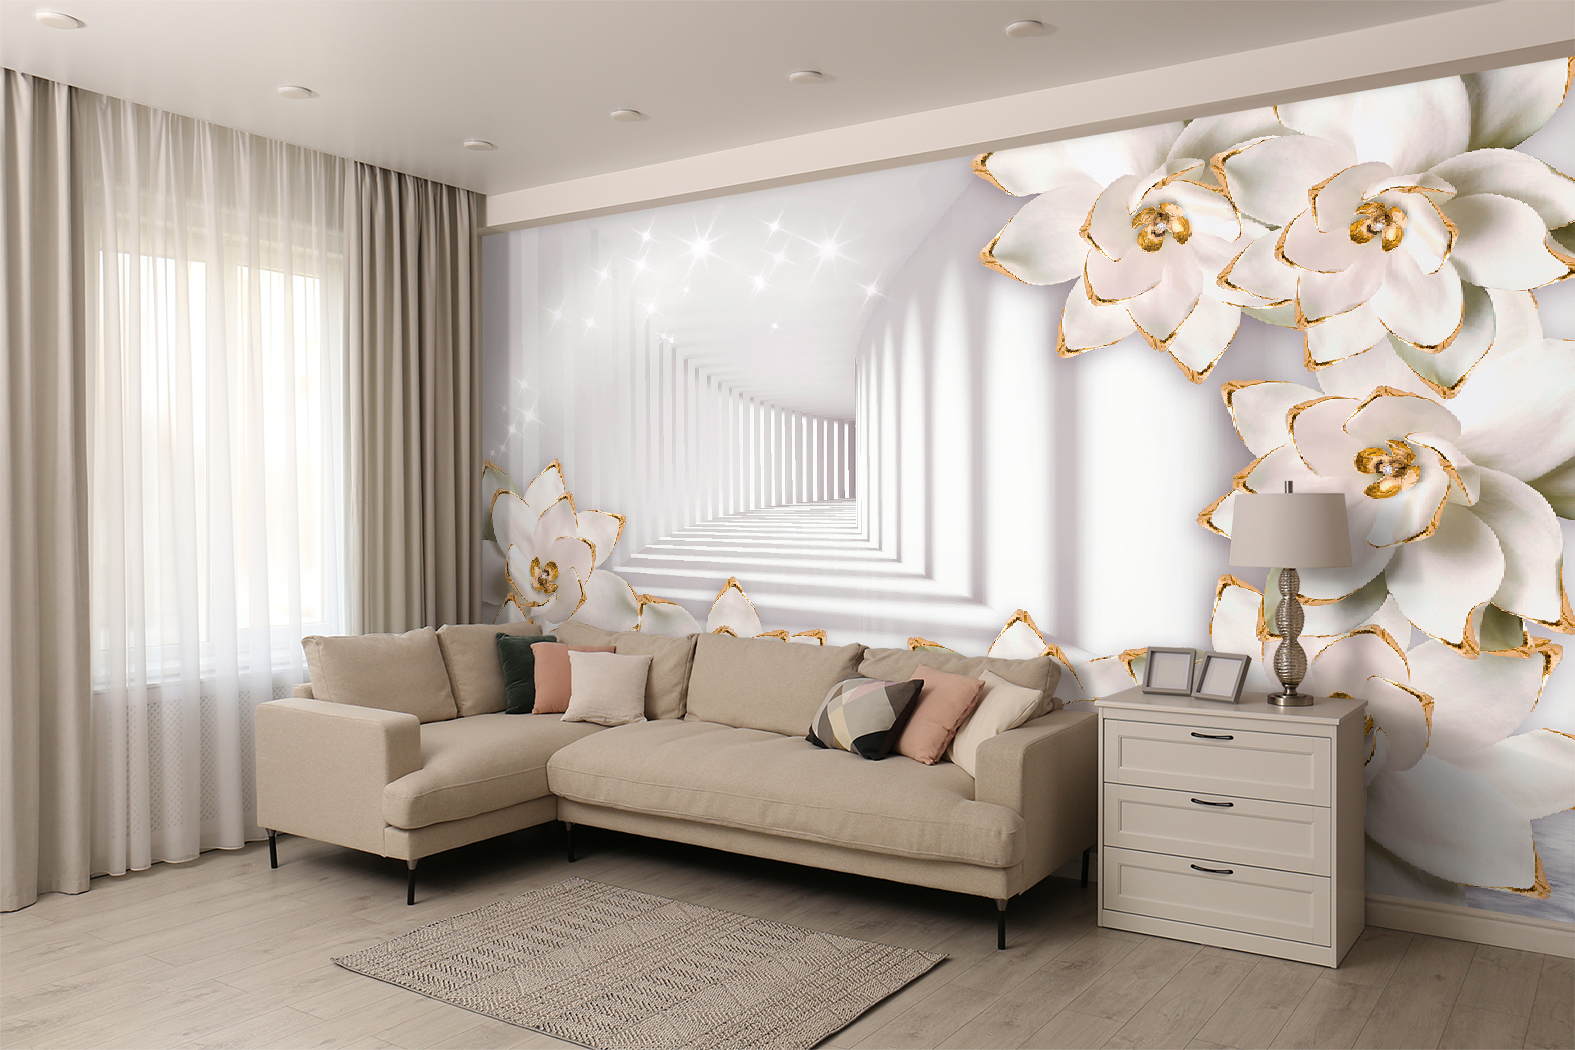 Фотообои Photostena 3D коридор и белые цветы 4,58 x 2,85 м